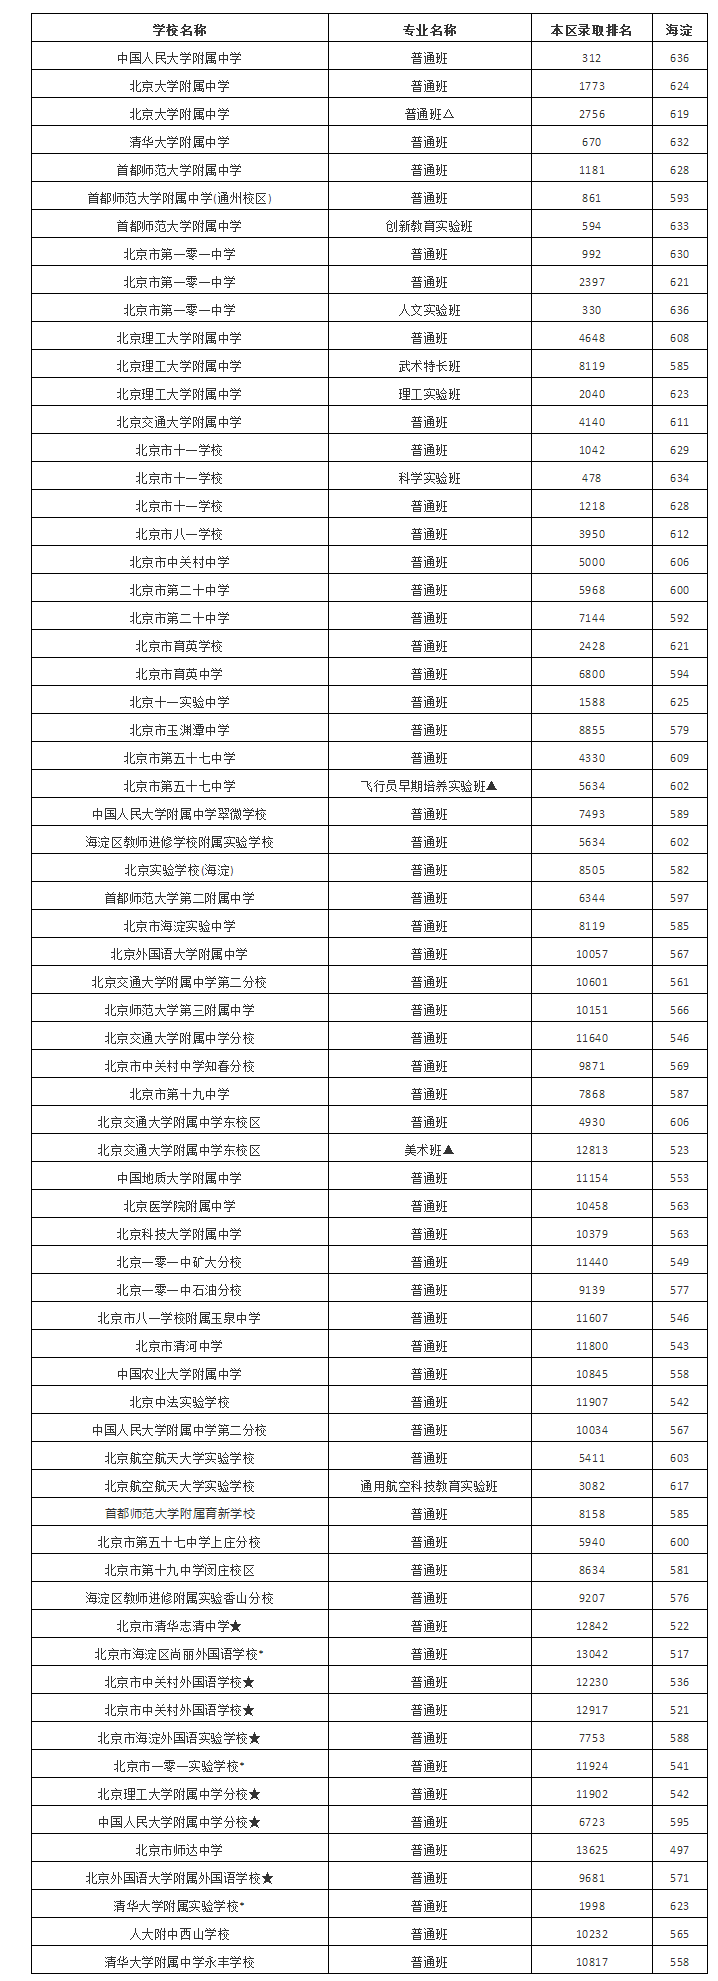 2021年北京中考录取分数线已公布